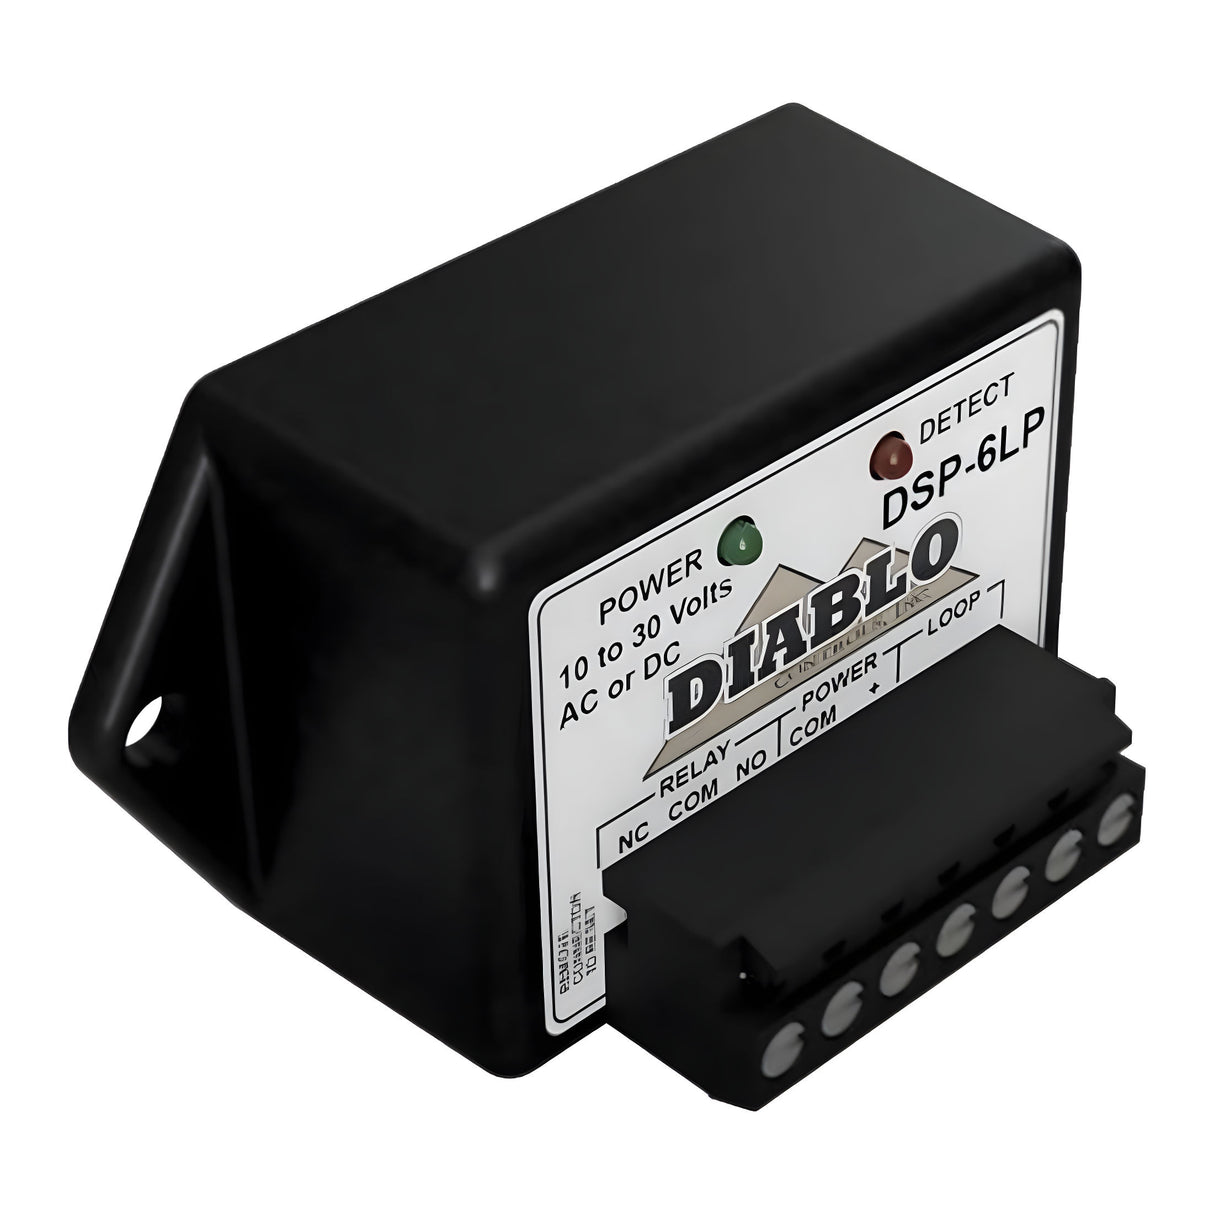 Diablo DSP-6LP Low Power Vehicle Loop Detector